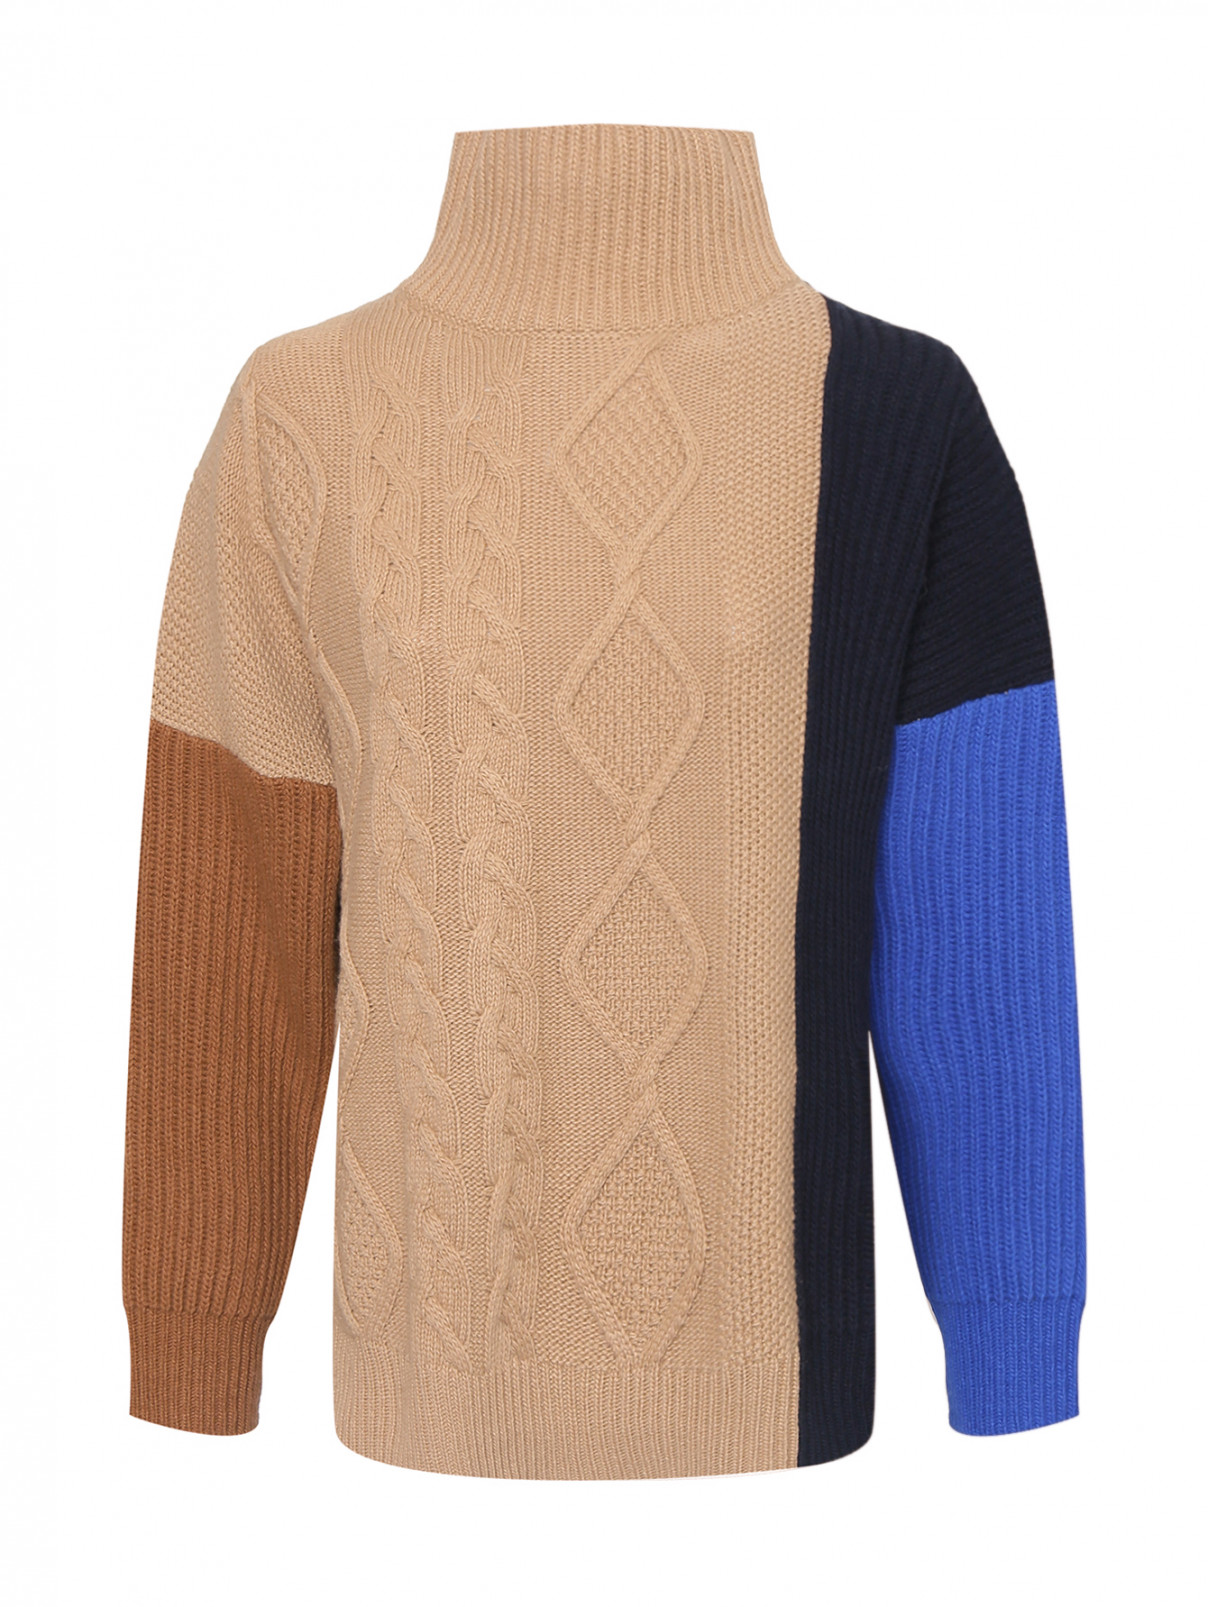 Шерстяной свитер в стиле колорблок Weekend Max Mara  –  Общий вид  – Цвет:  Бежевый